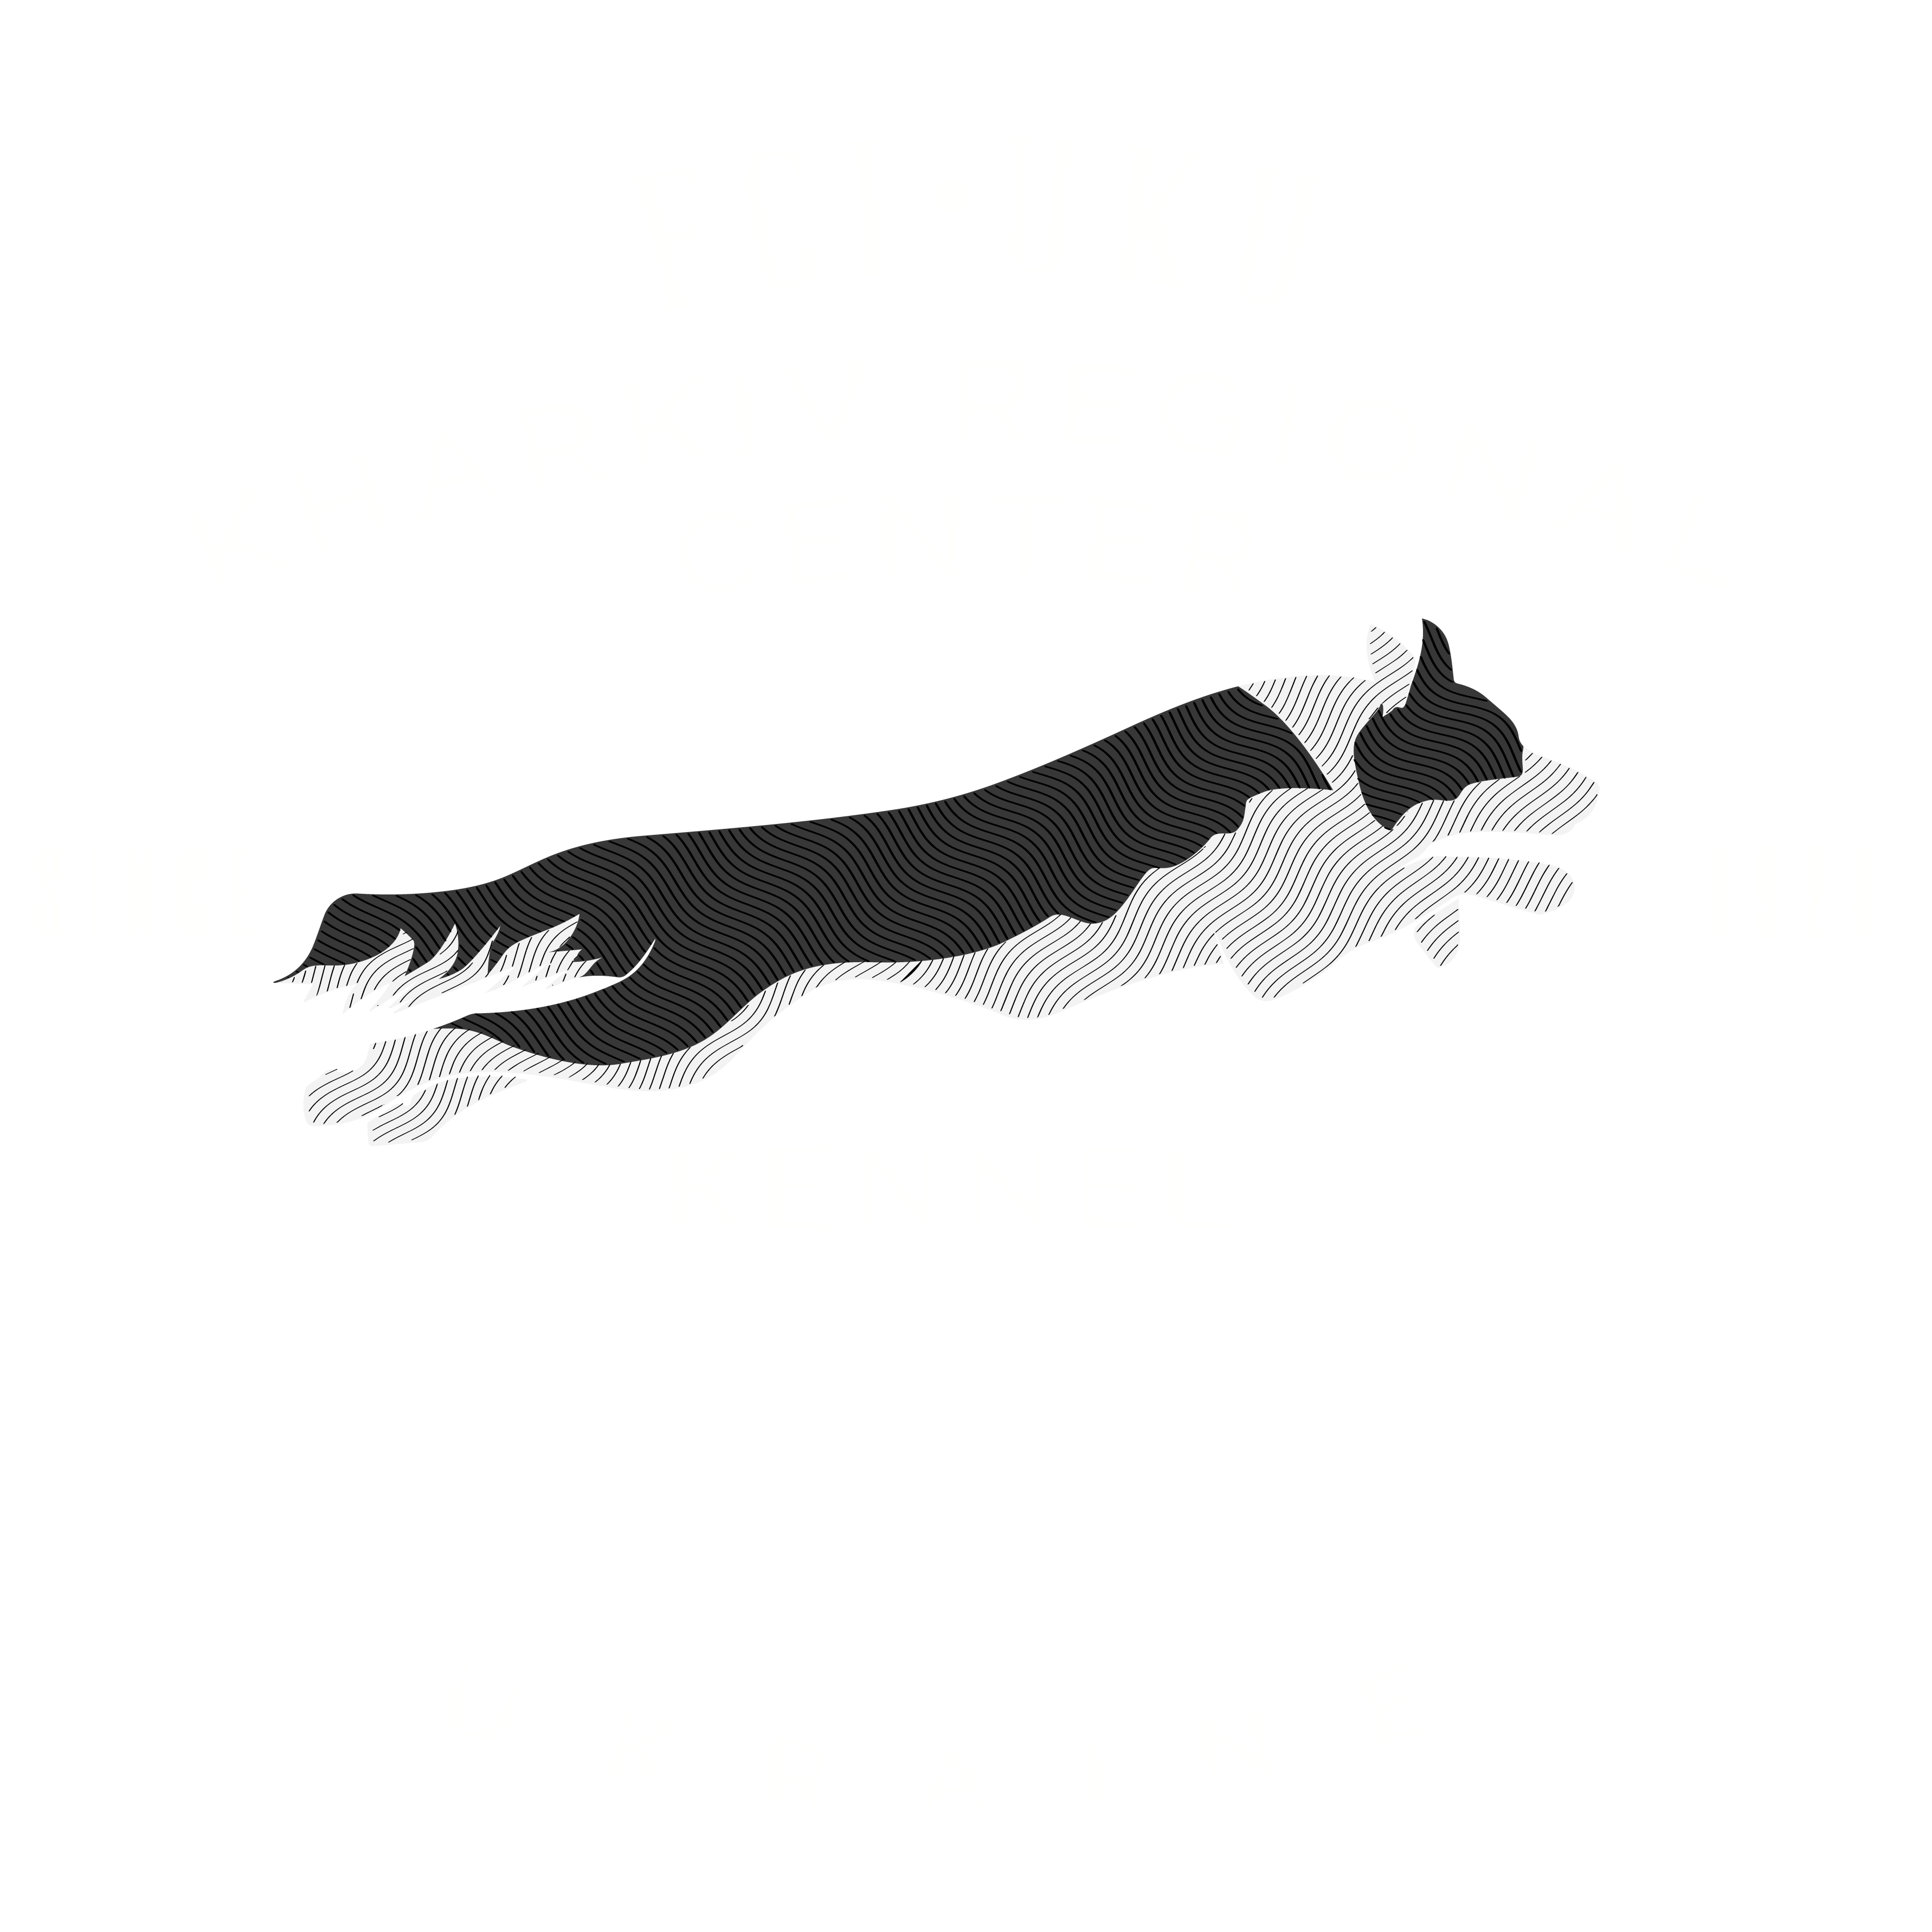 FCI-UKU